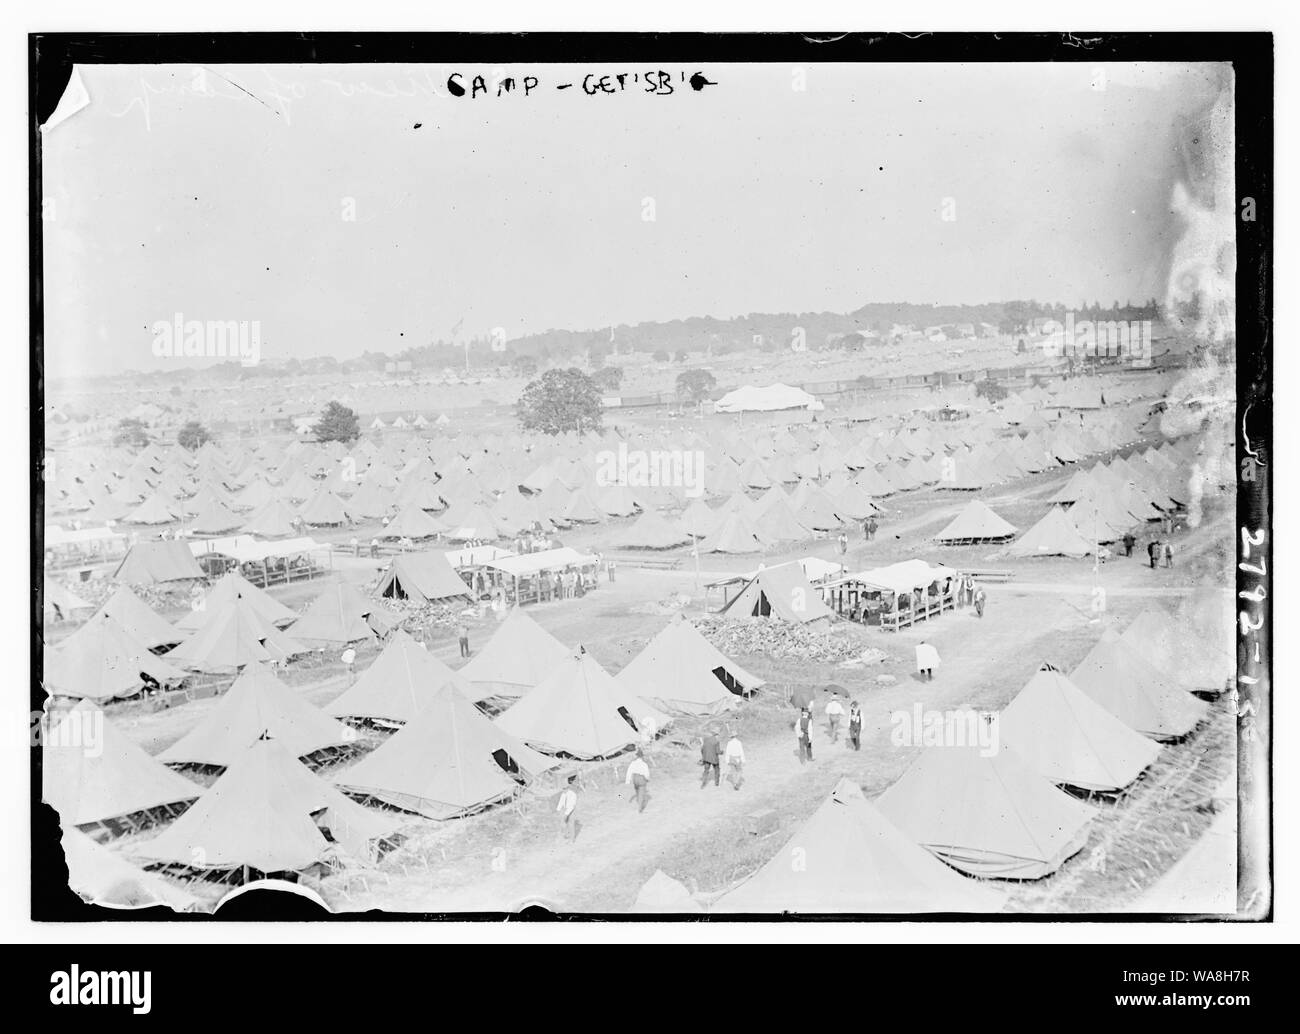 Camp - Gettysburg Stock Photo